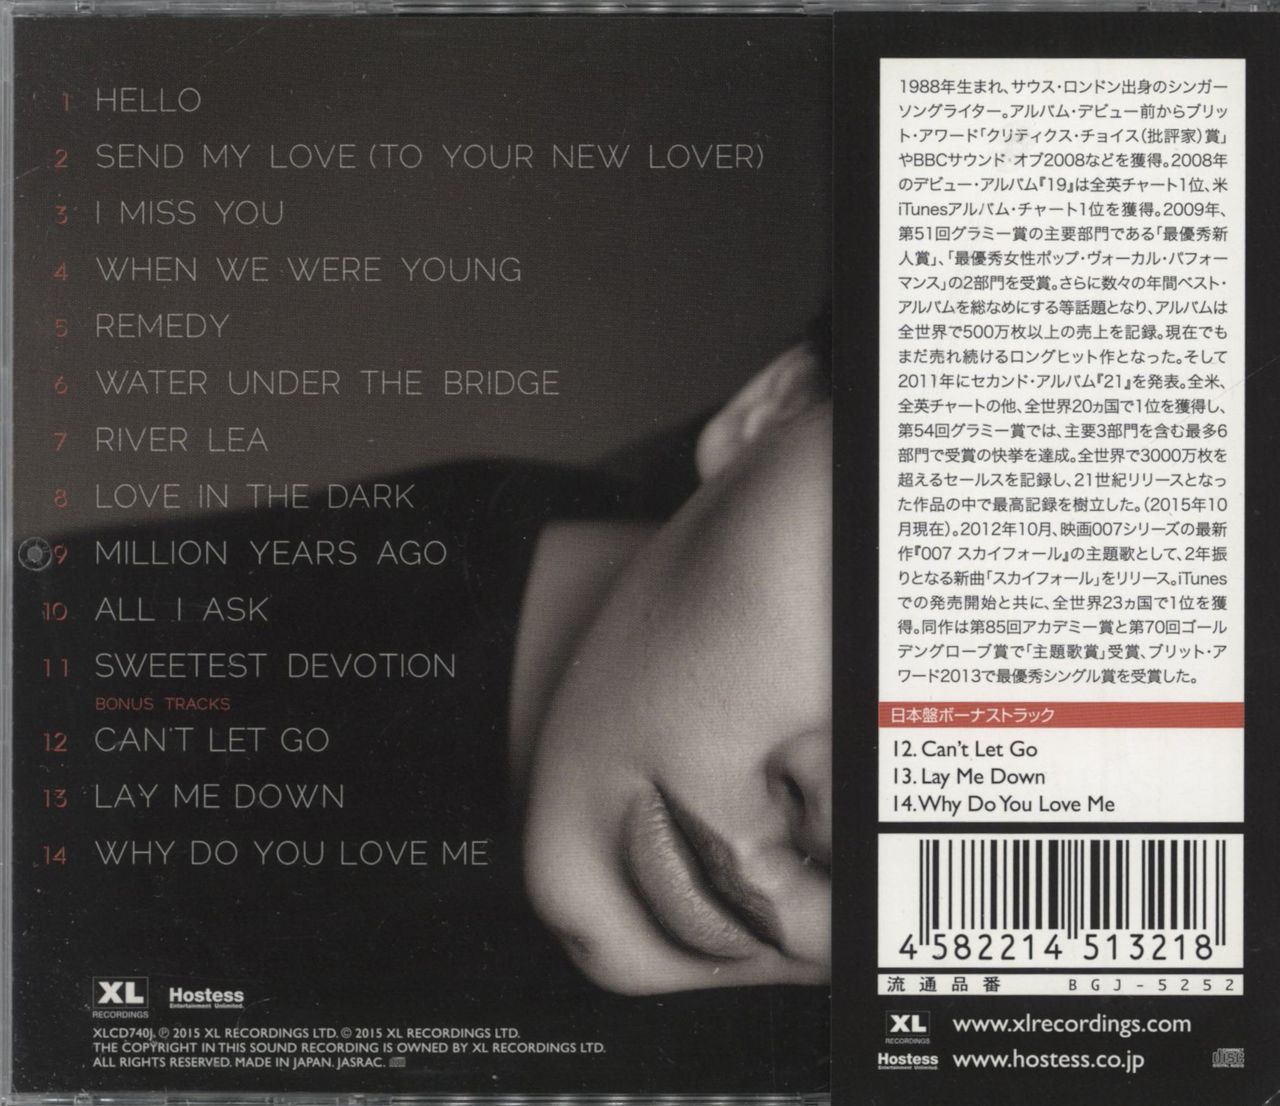 Adele 25 - Twenty Five + Obi Japanese CD album — RareVinyl.com